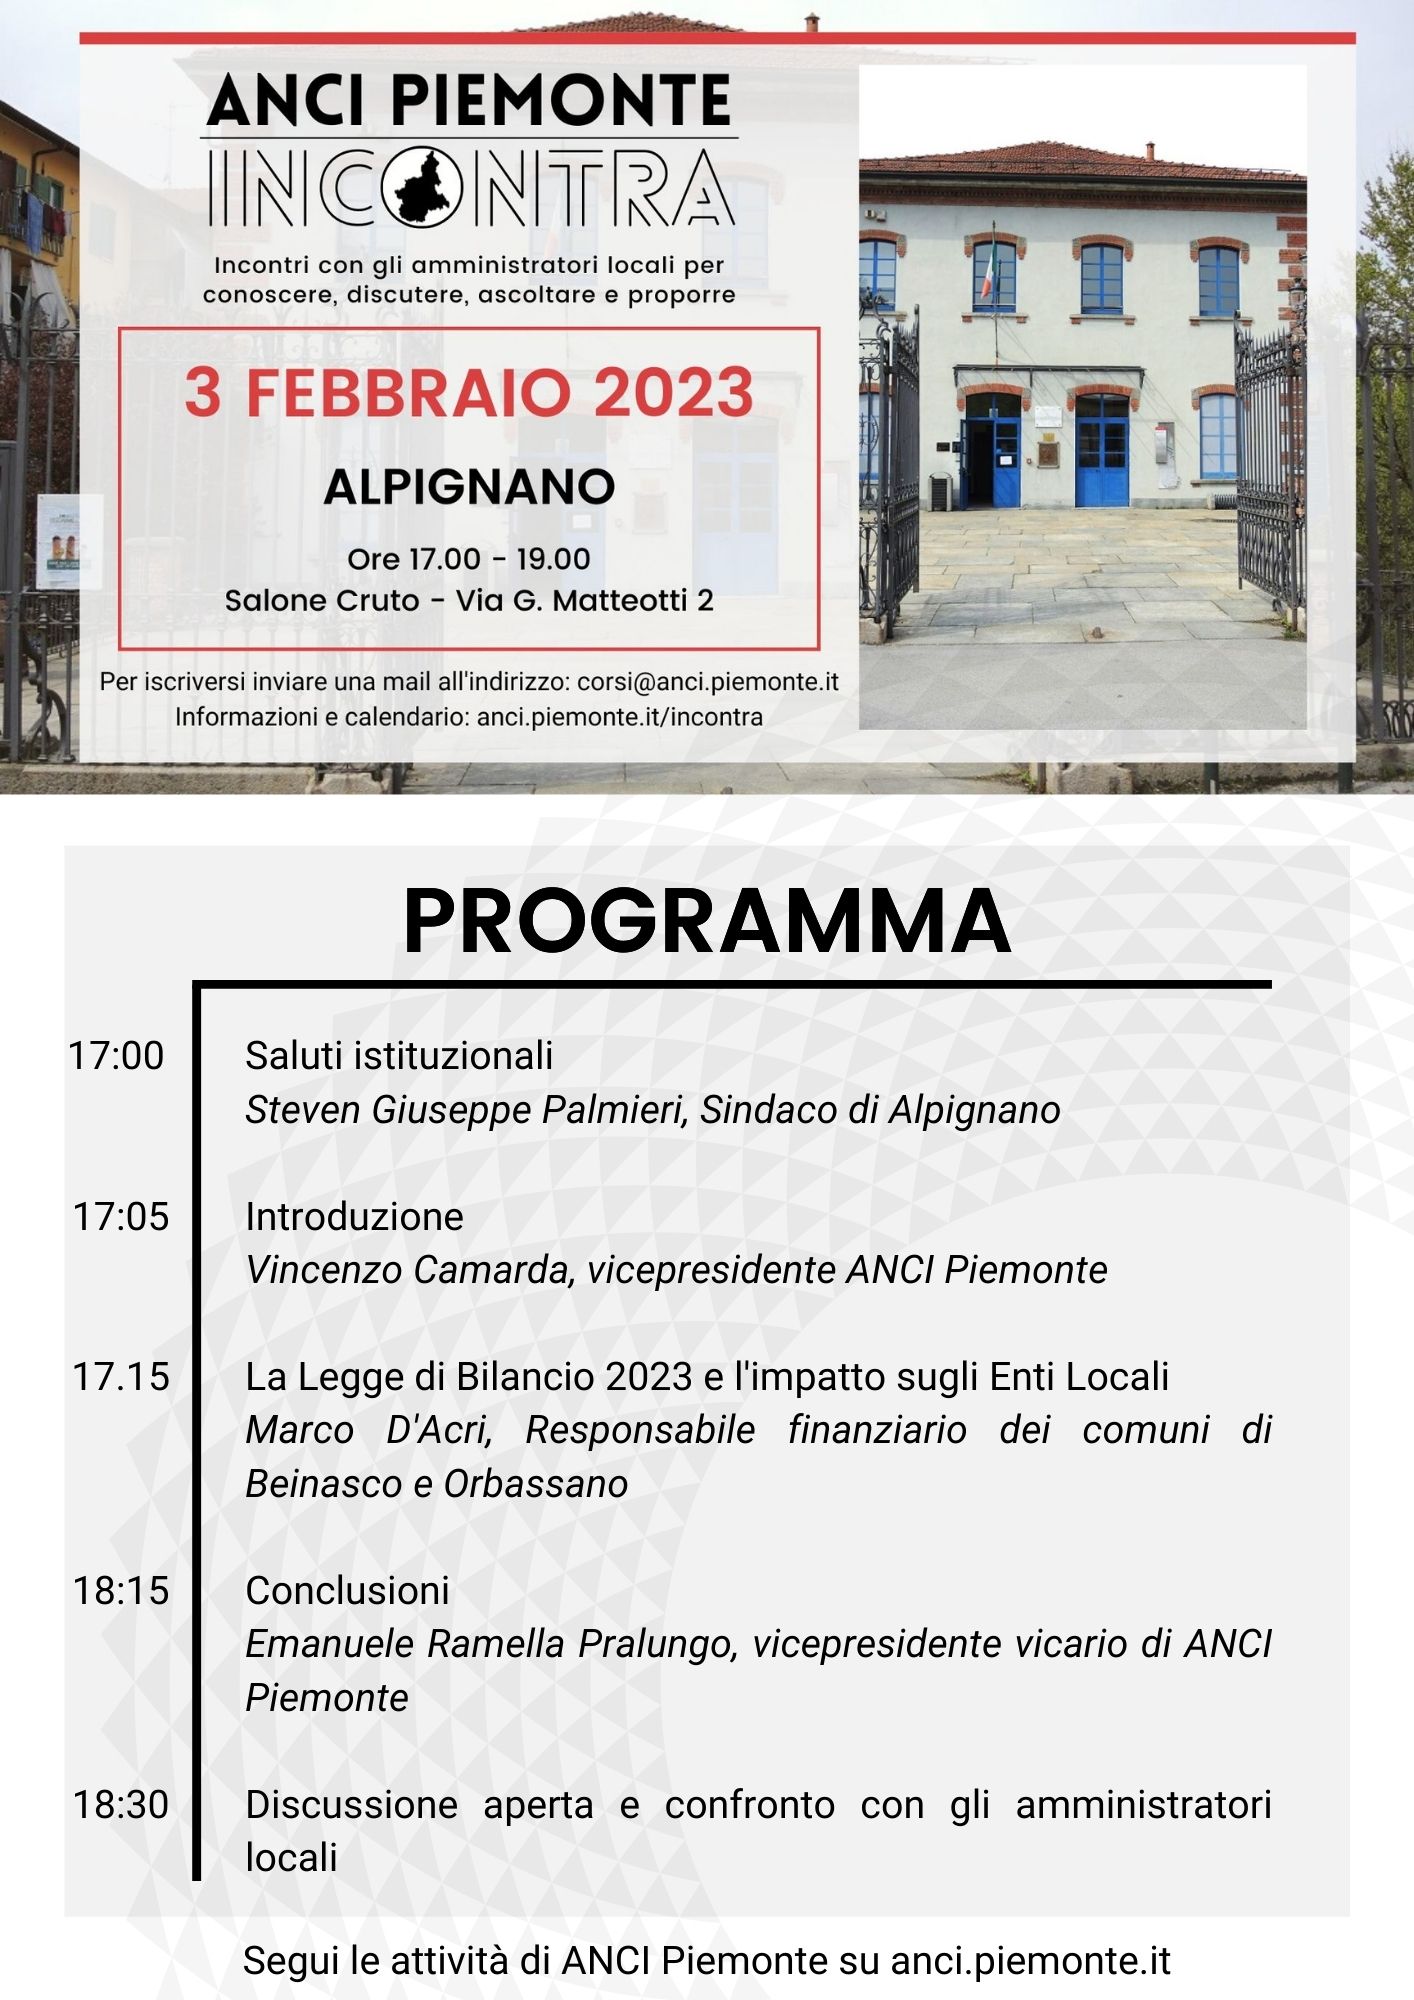 Programma ANCI Piemonte Incontra - 3 febbraio 2023 - Alpignano